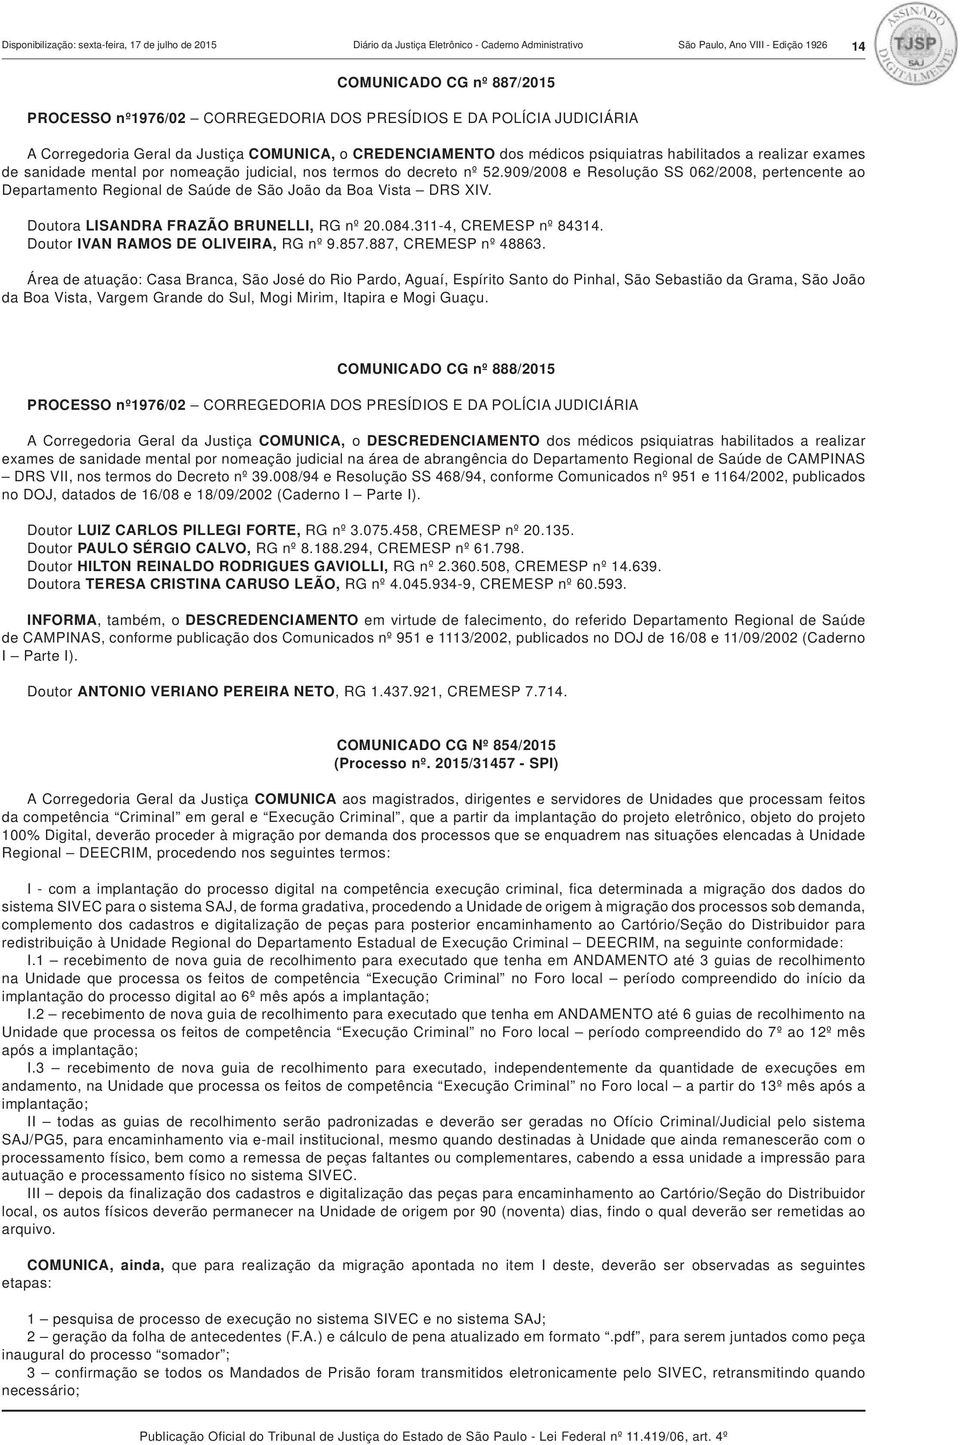 termos do decreto nº 52.909/2008 e Resolução SS 062/2008, pertencente ao Departamento Regional de Saúde de São João da Boa Vista DRS XIV. Doutora LISANDRA FRAZÃO BRUNELLI, RG nº 20.084.